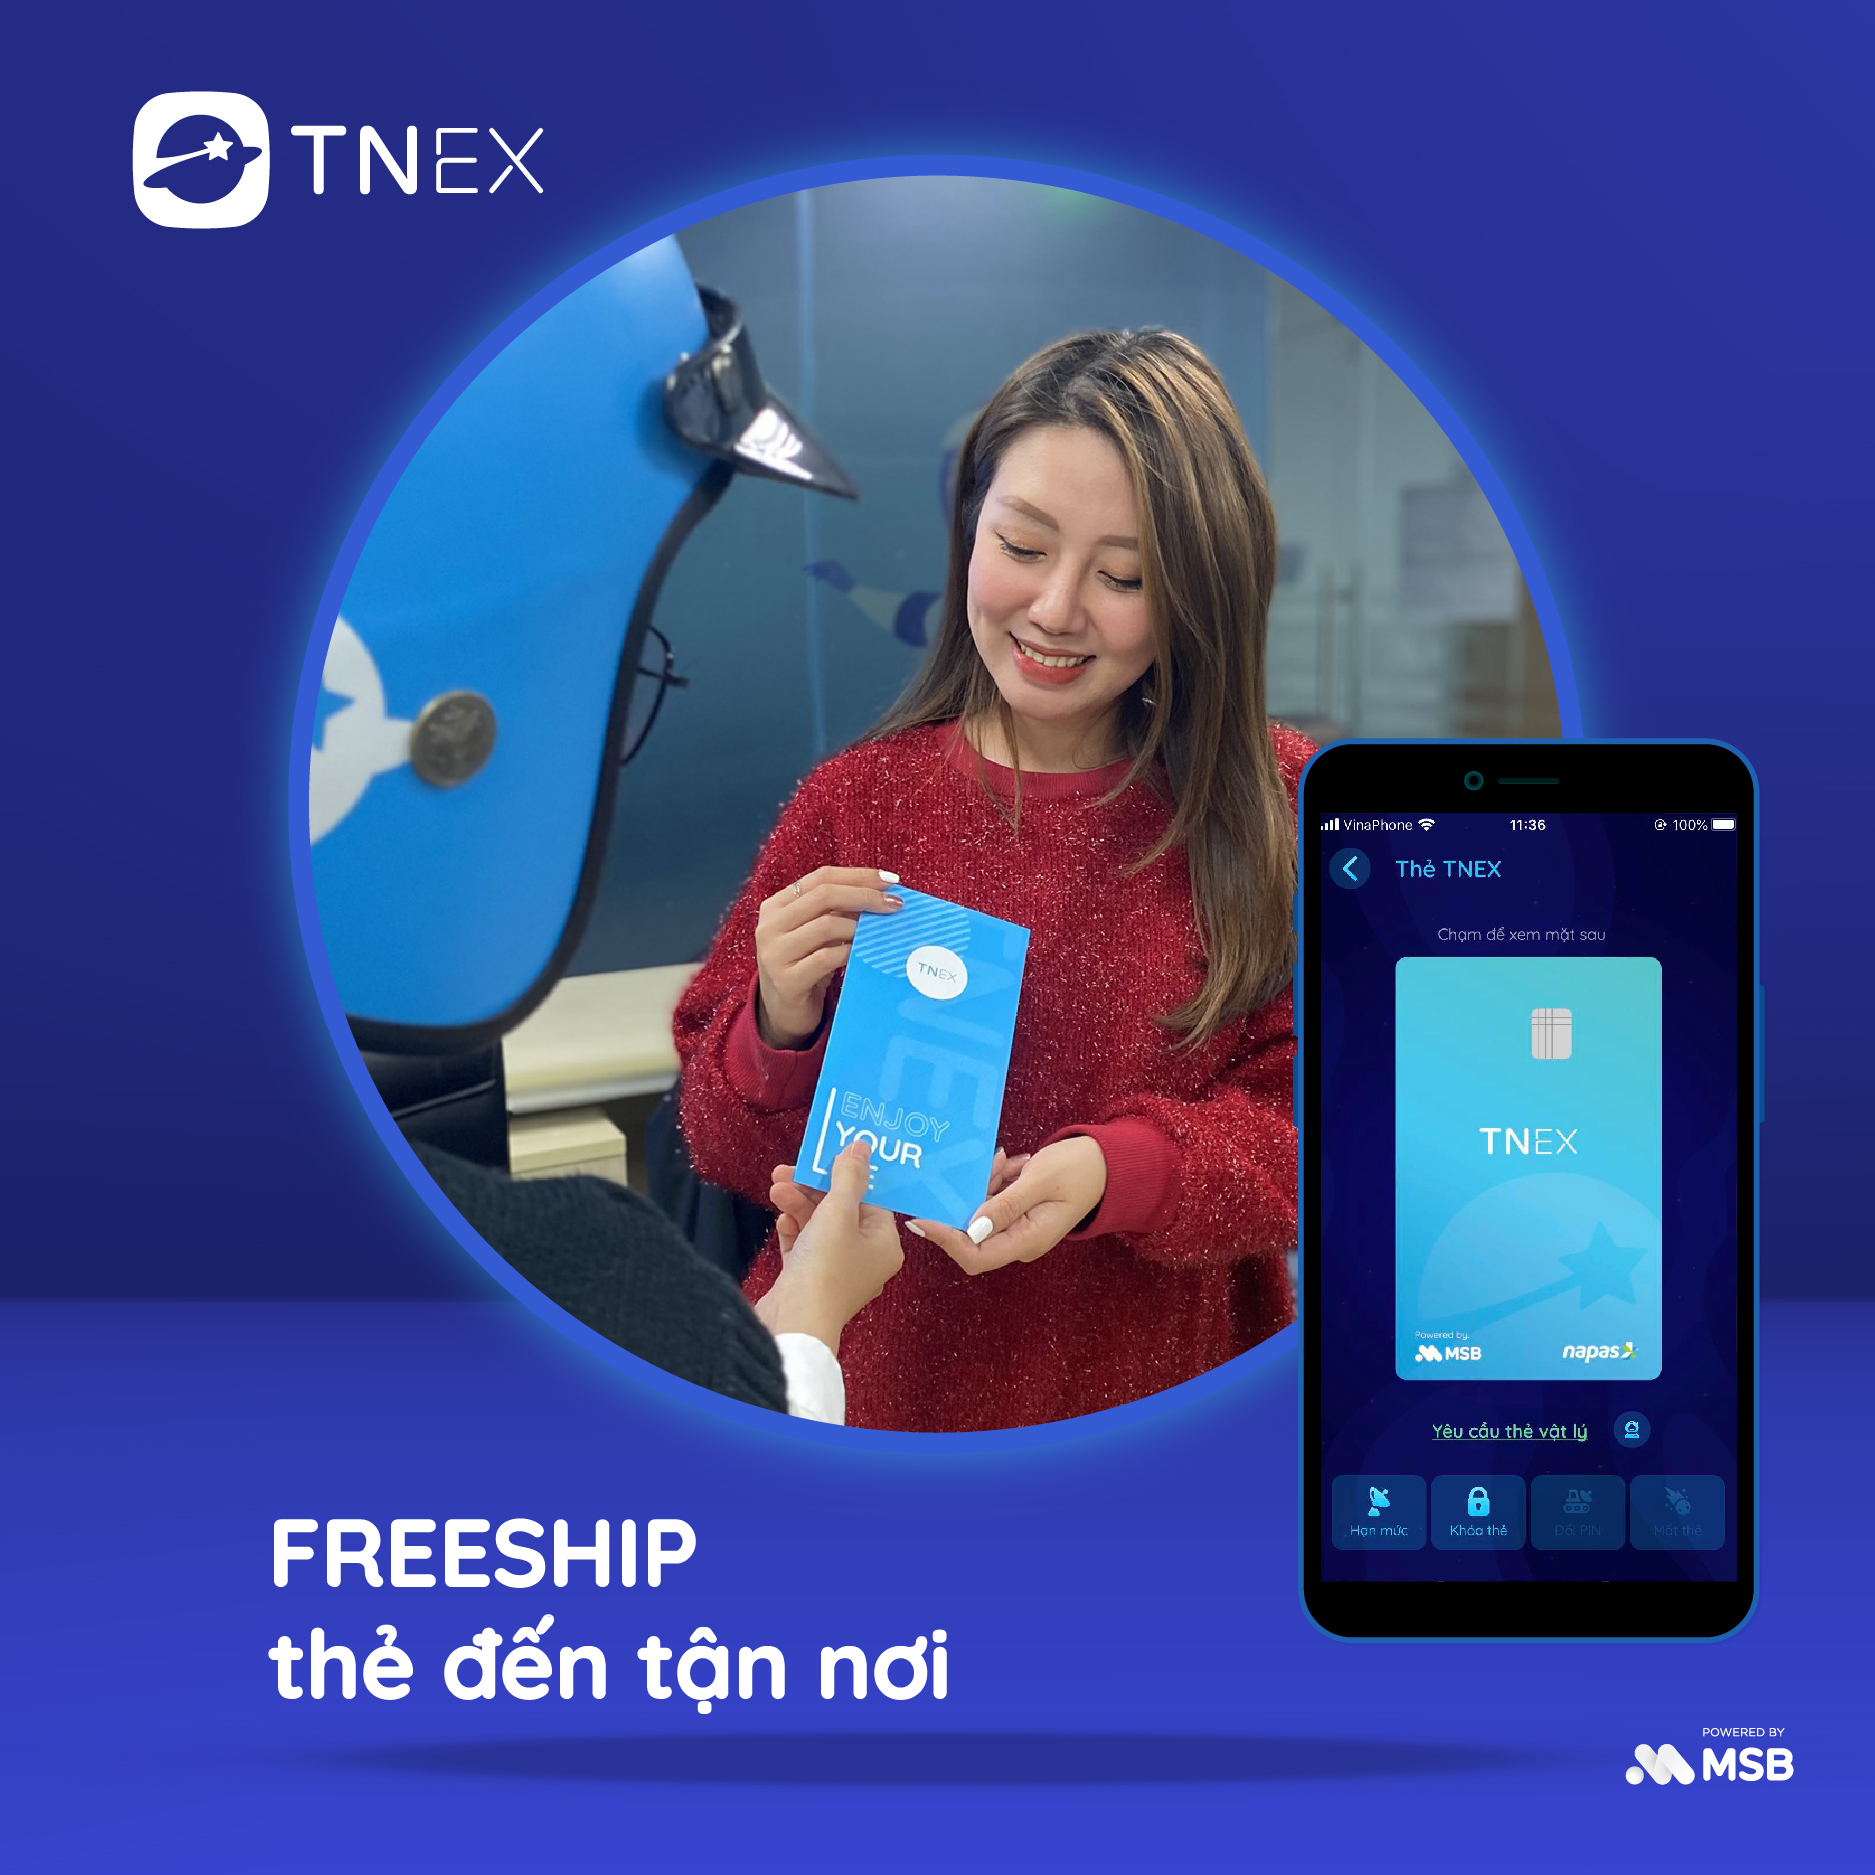 TNEX - Thẻ ngân hàng hoàn toàn mới